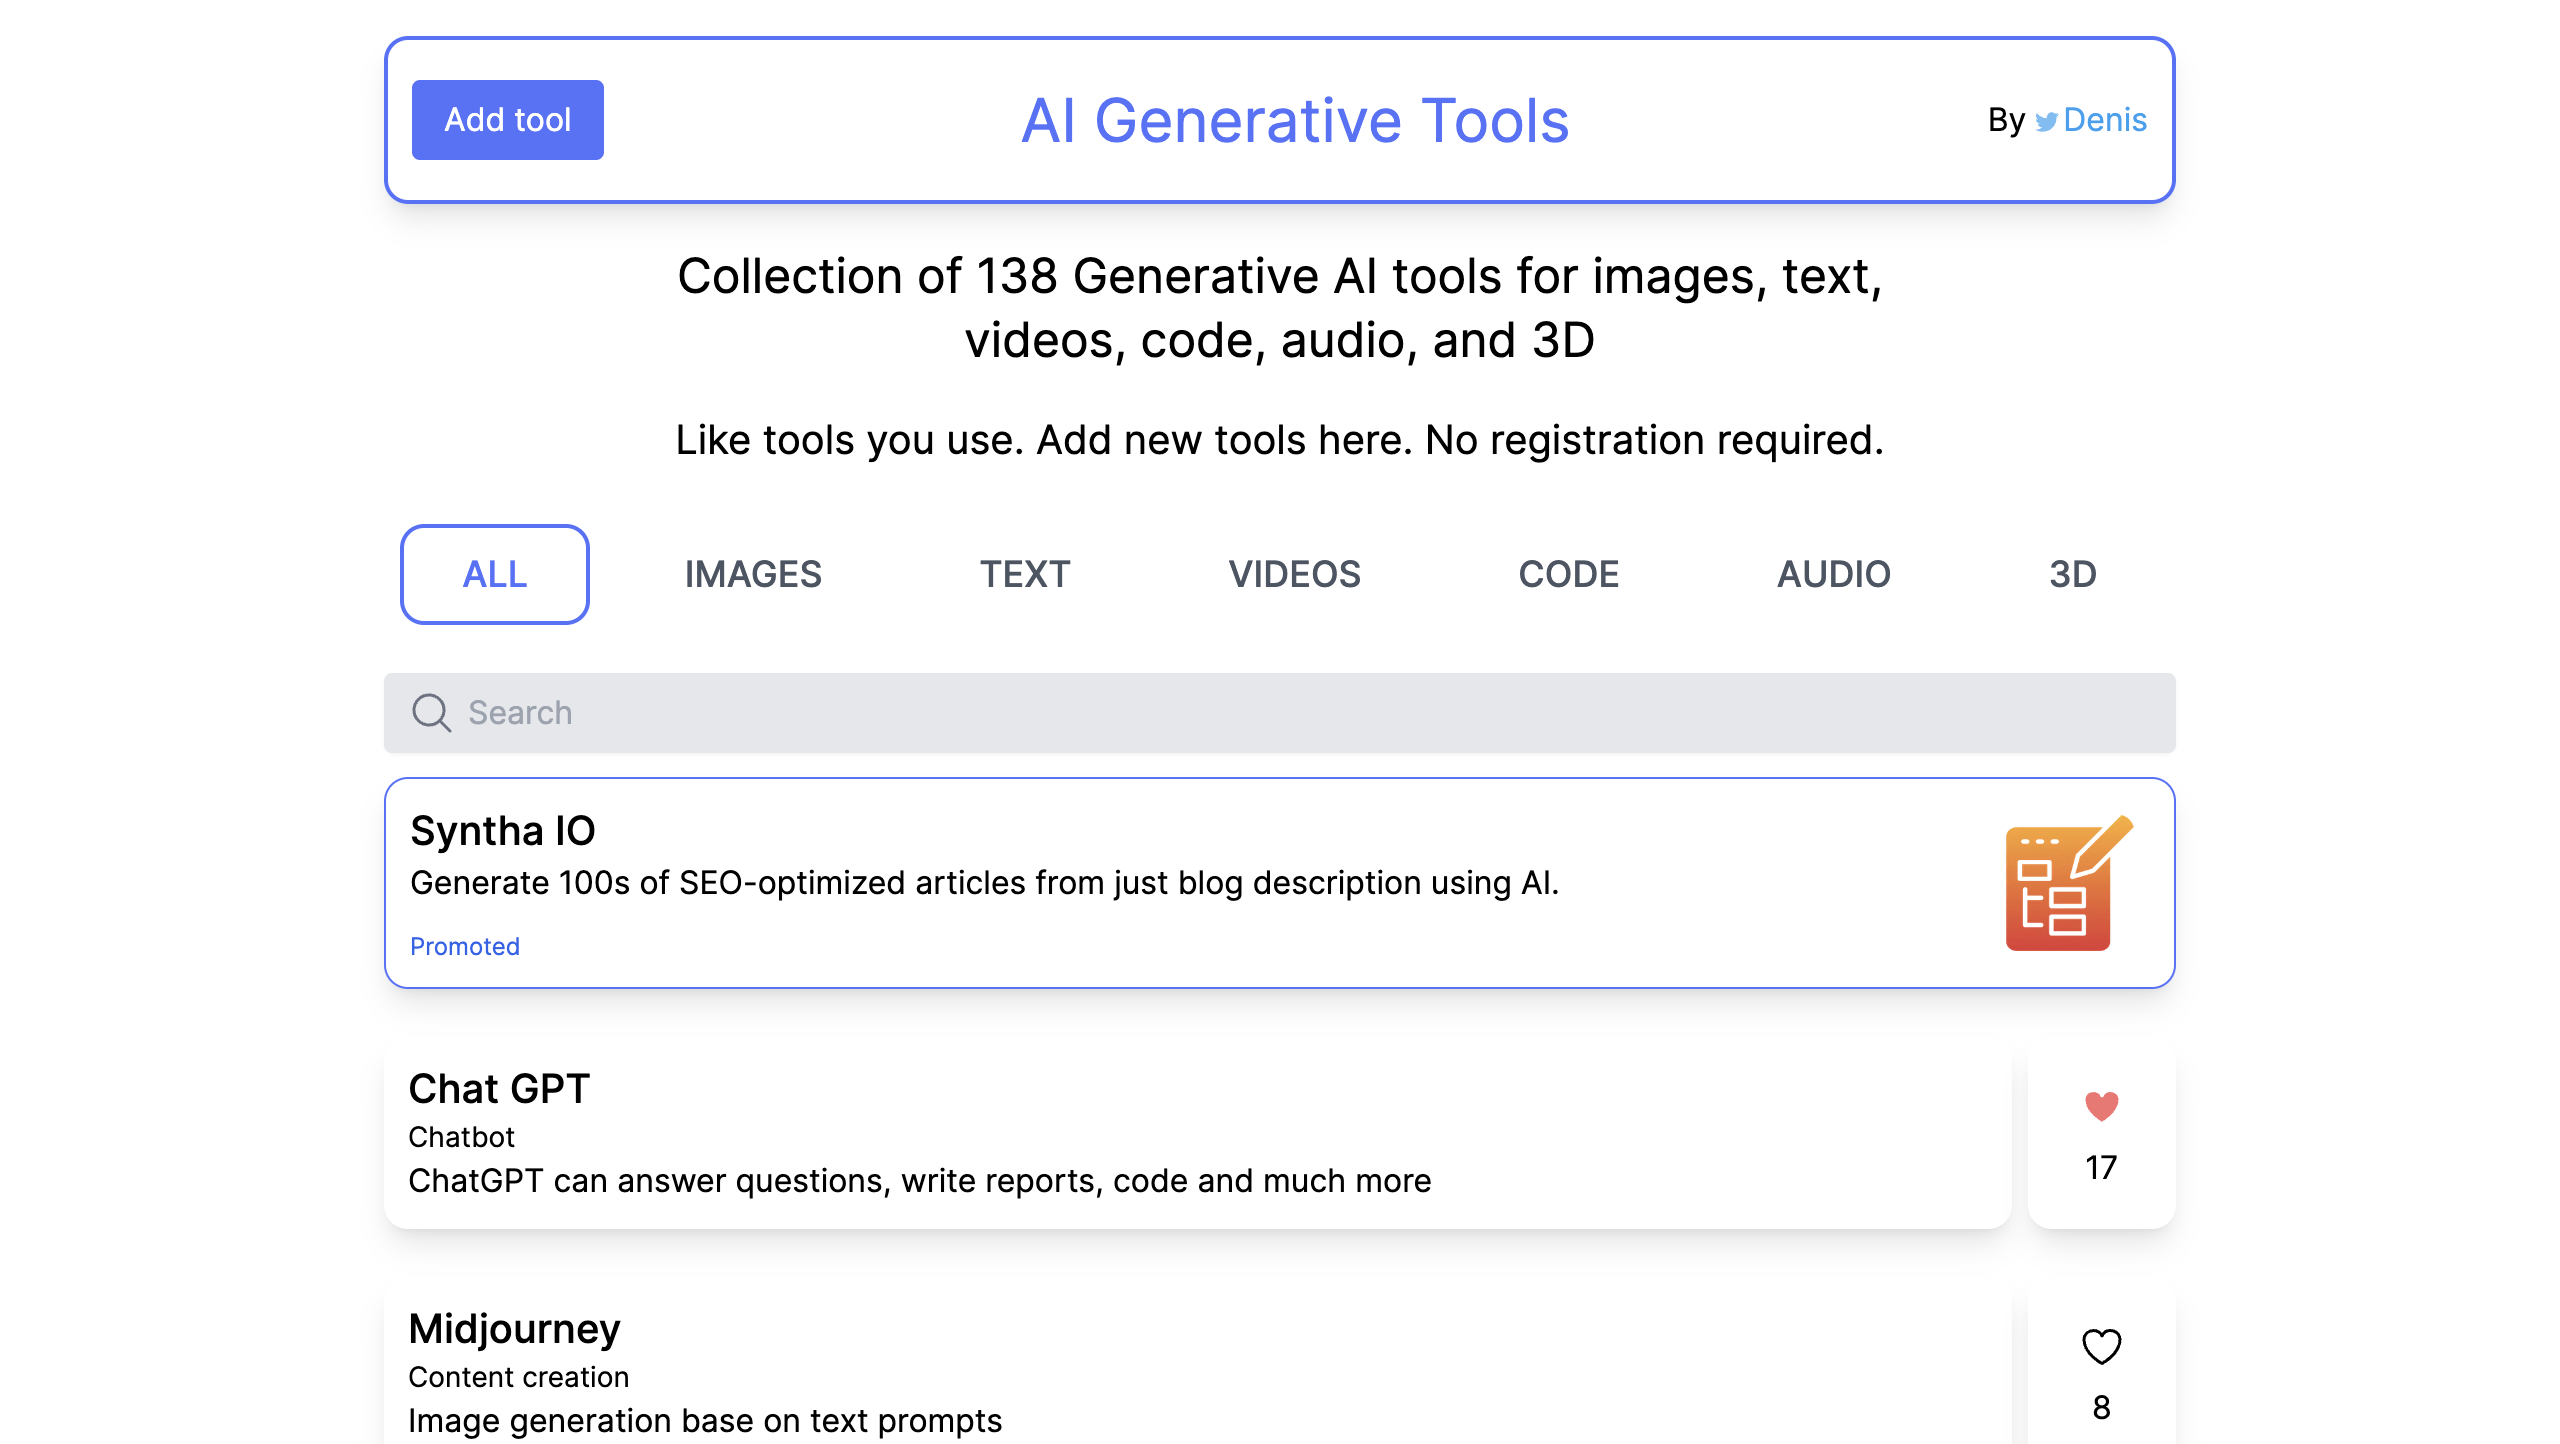 AI Generative Tools